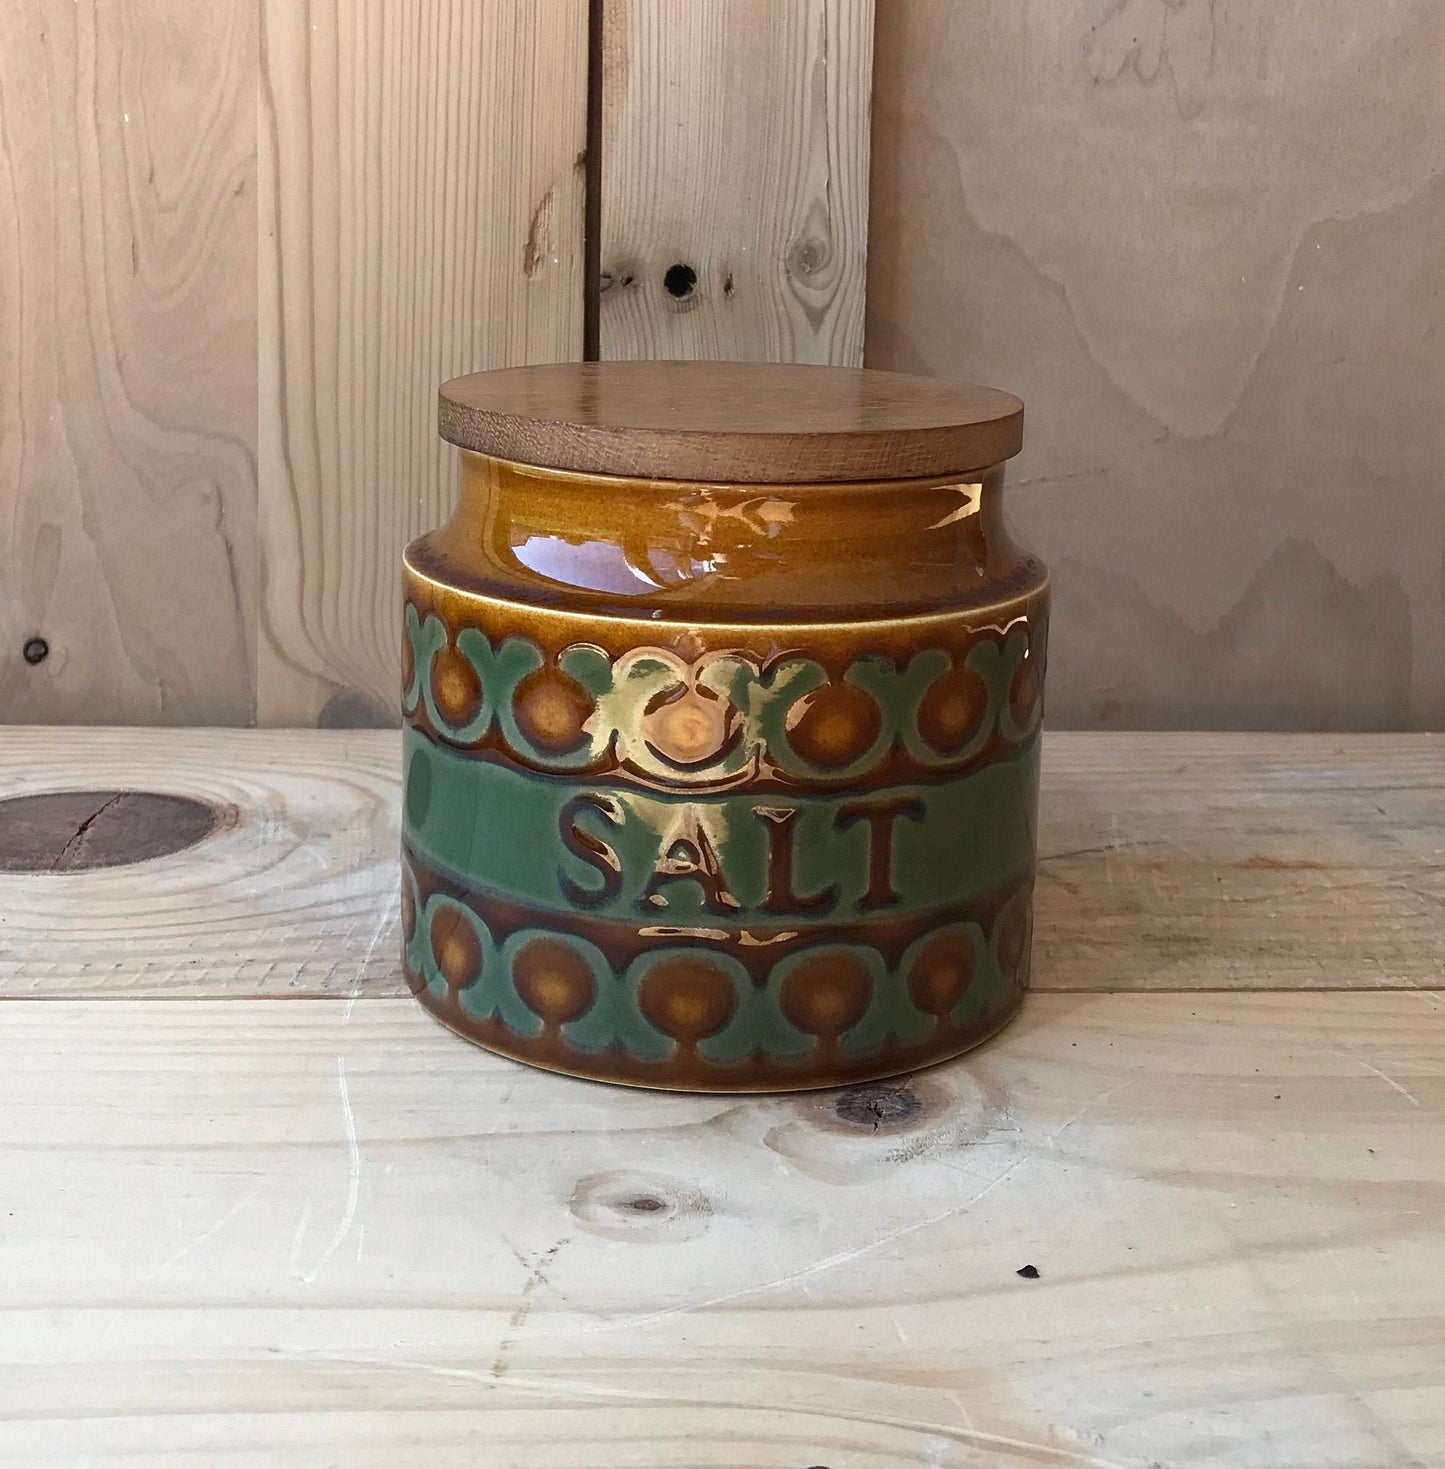 Hornsea Bronte storage jars